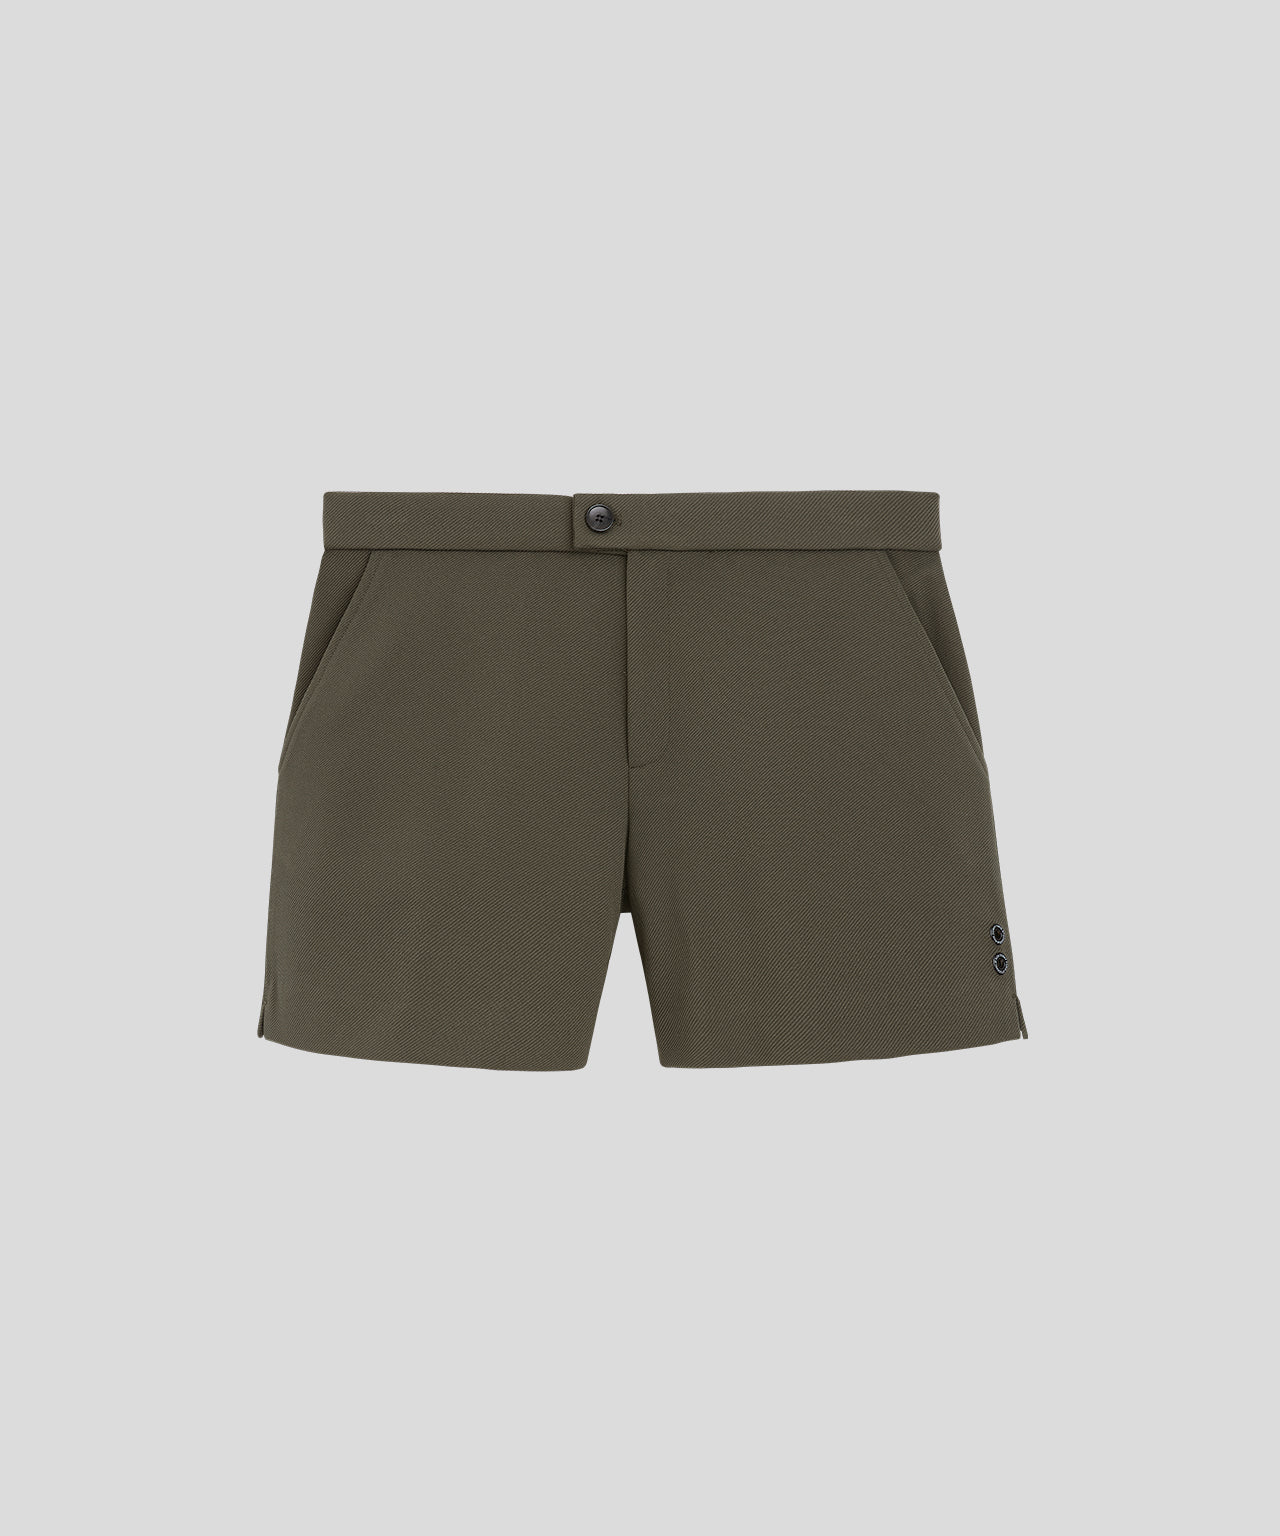 Tennis Shorts: Khaki